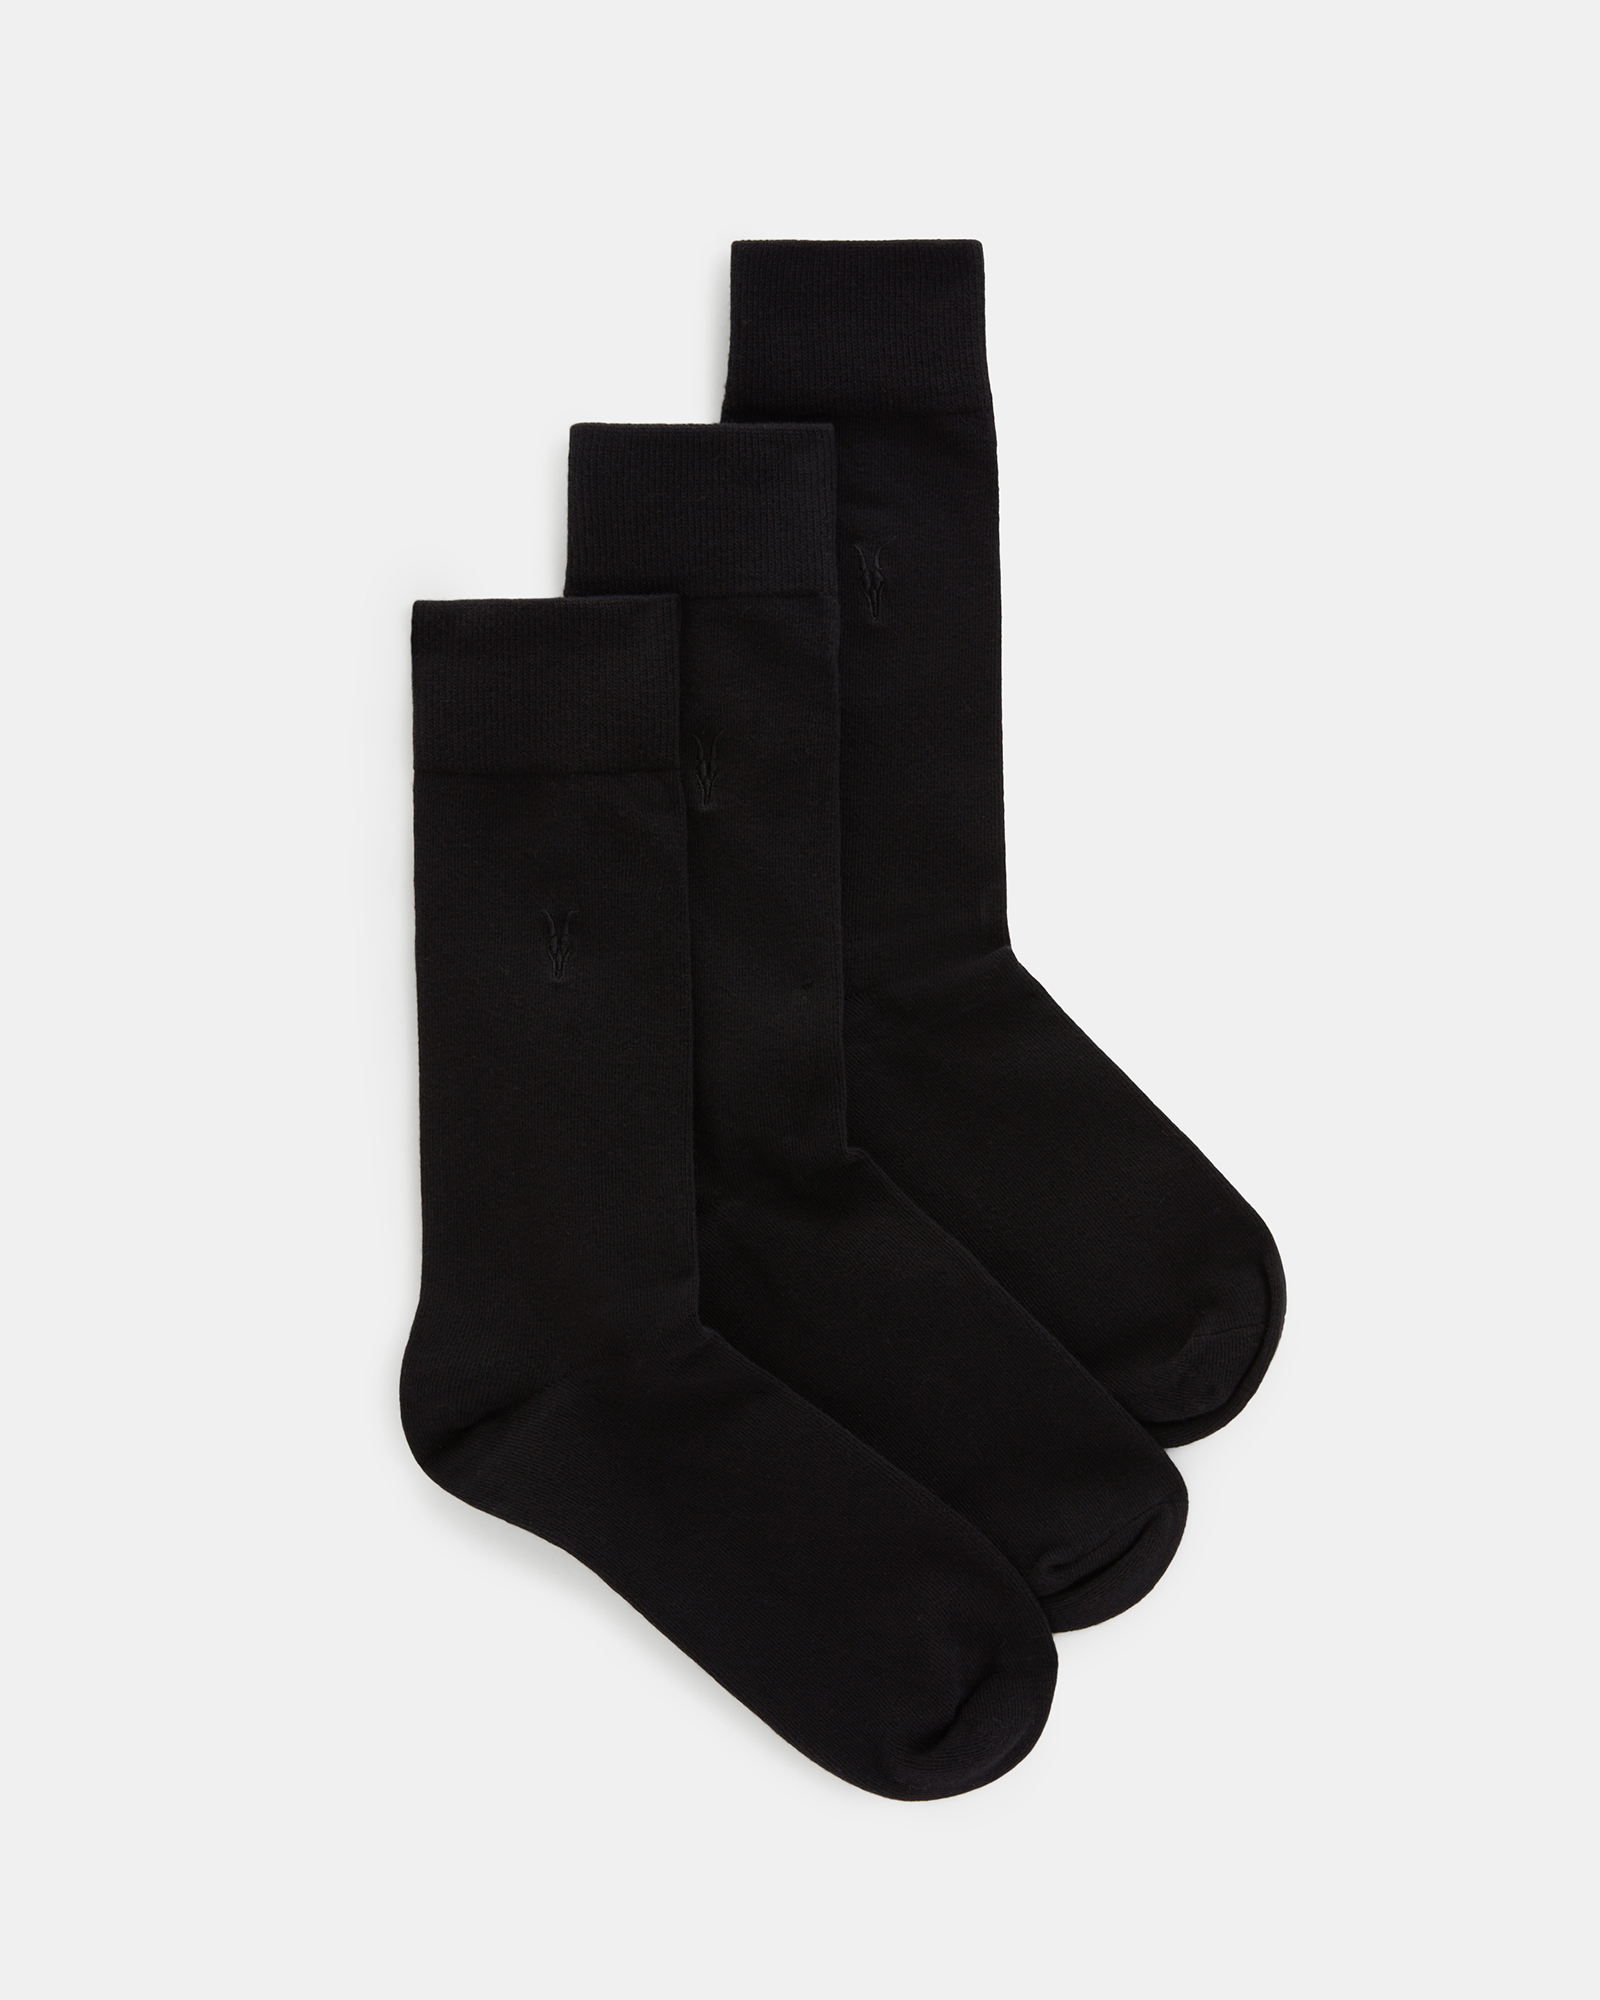 AllSaints Adan Ramskull Embroidered Socks 3 Pack,, Black